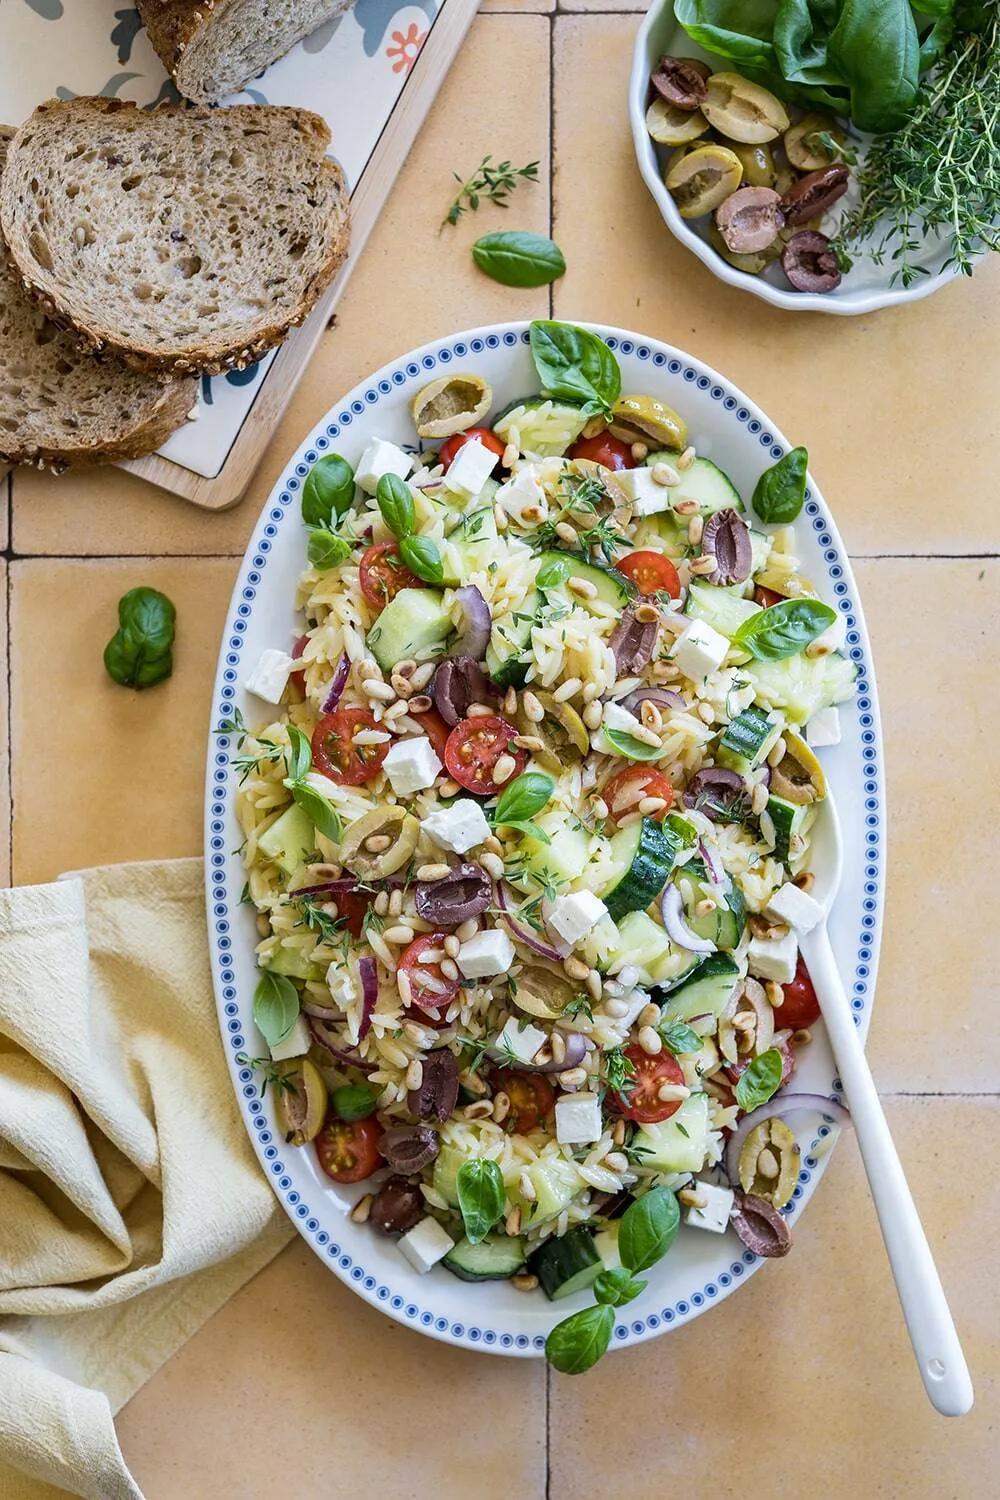 Griechischer Orzo Salat (Nudelsalat) - Home and Herbs